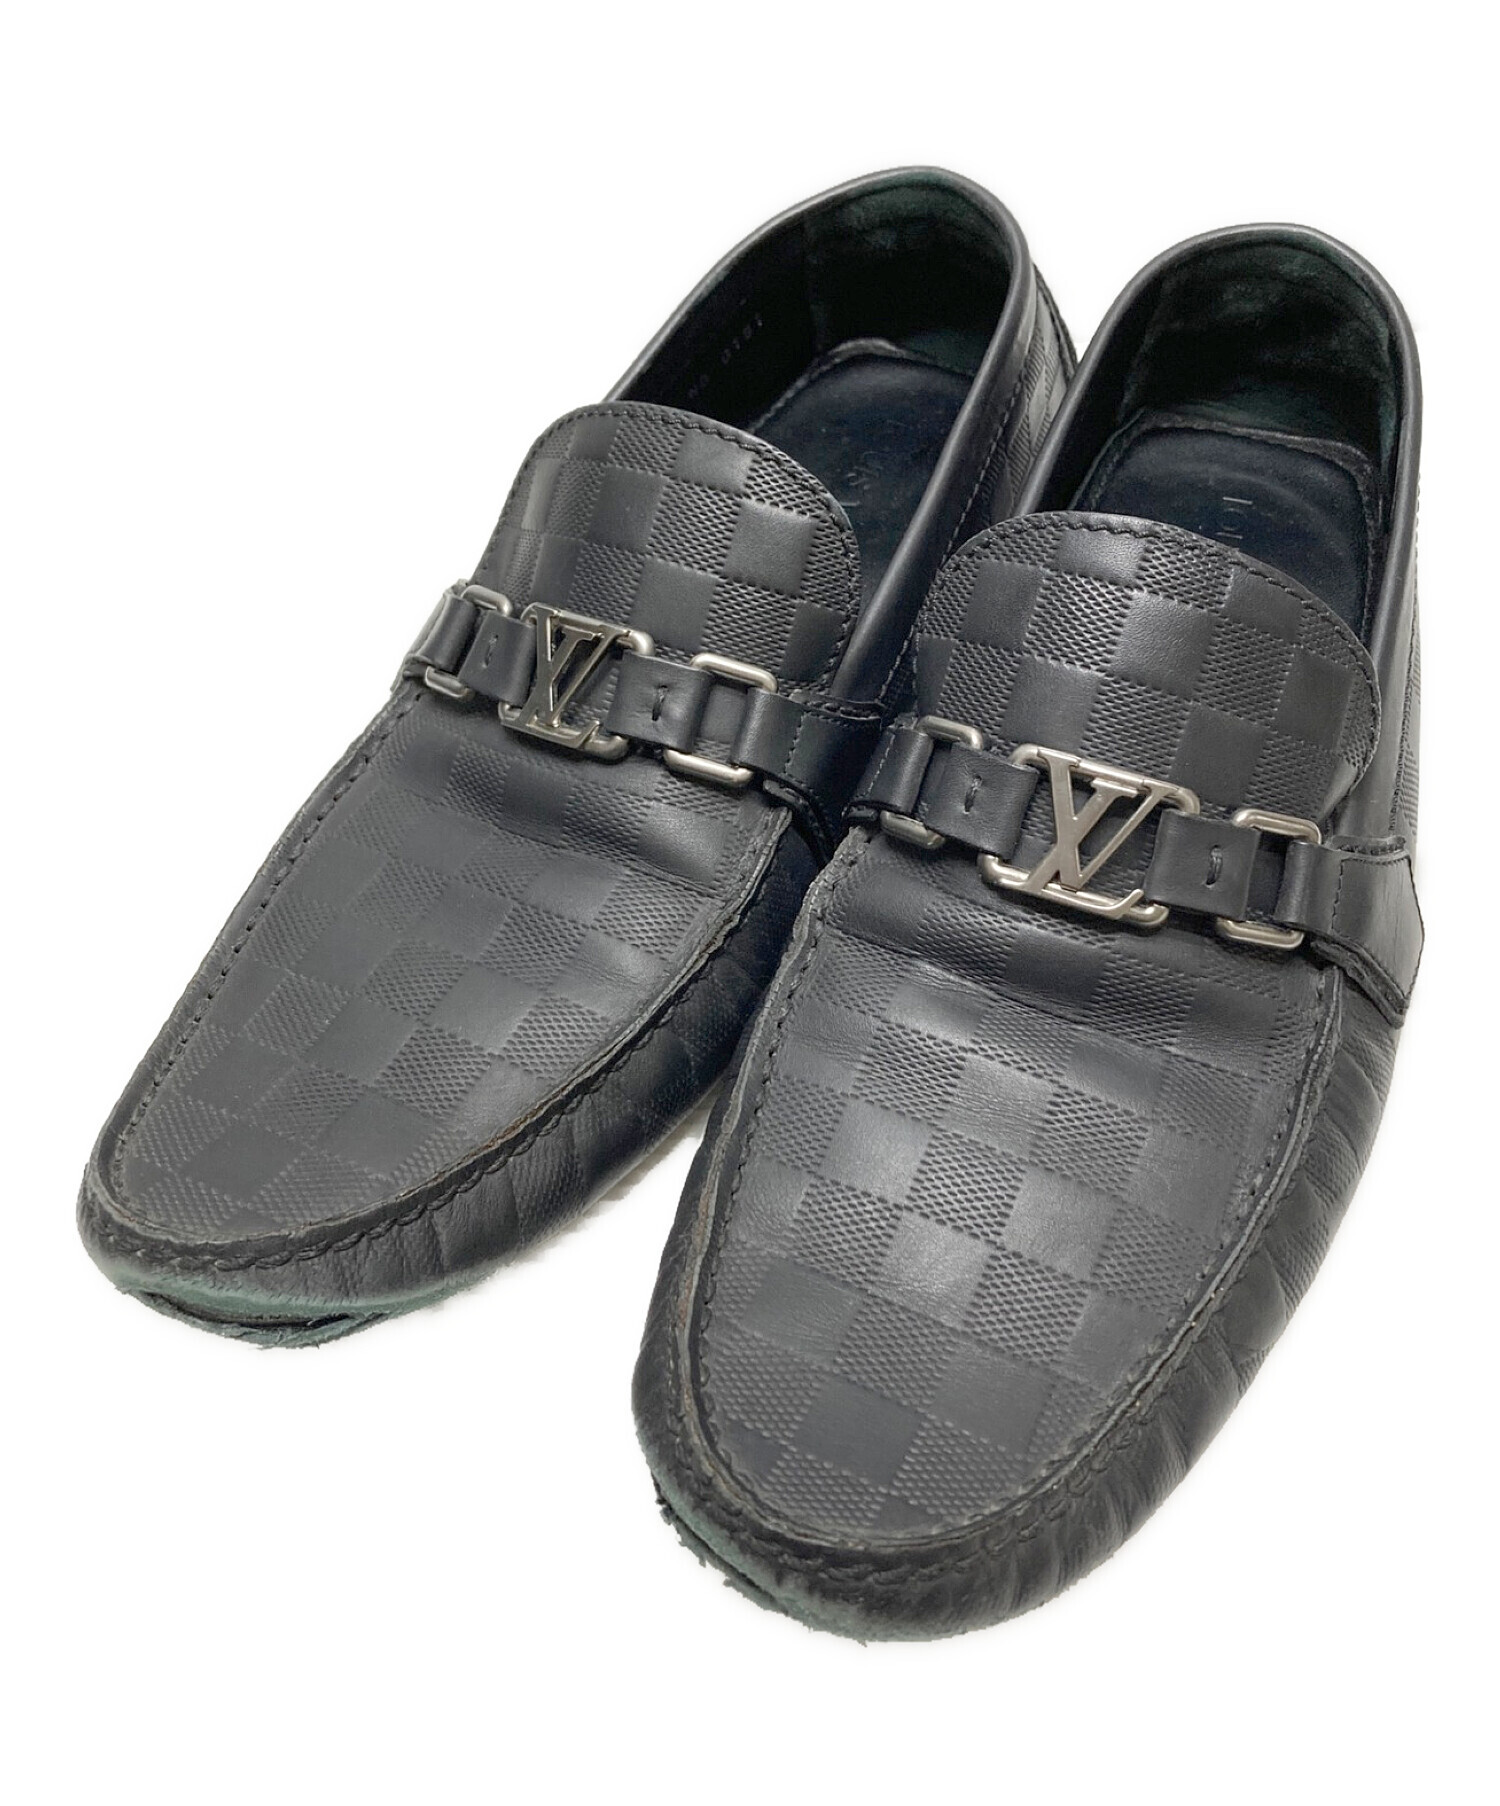 Louis Vuitton ルイヴィトン ドライビングシューズ - 靴